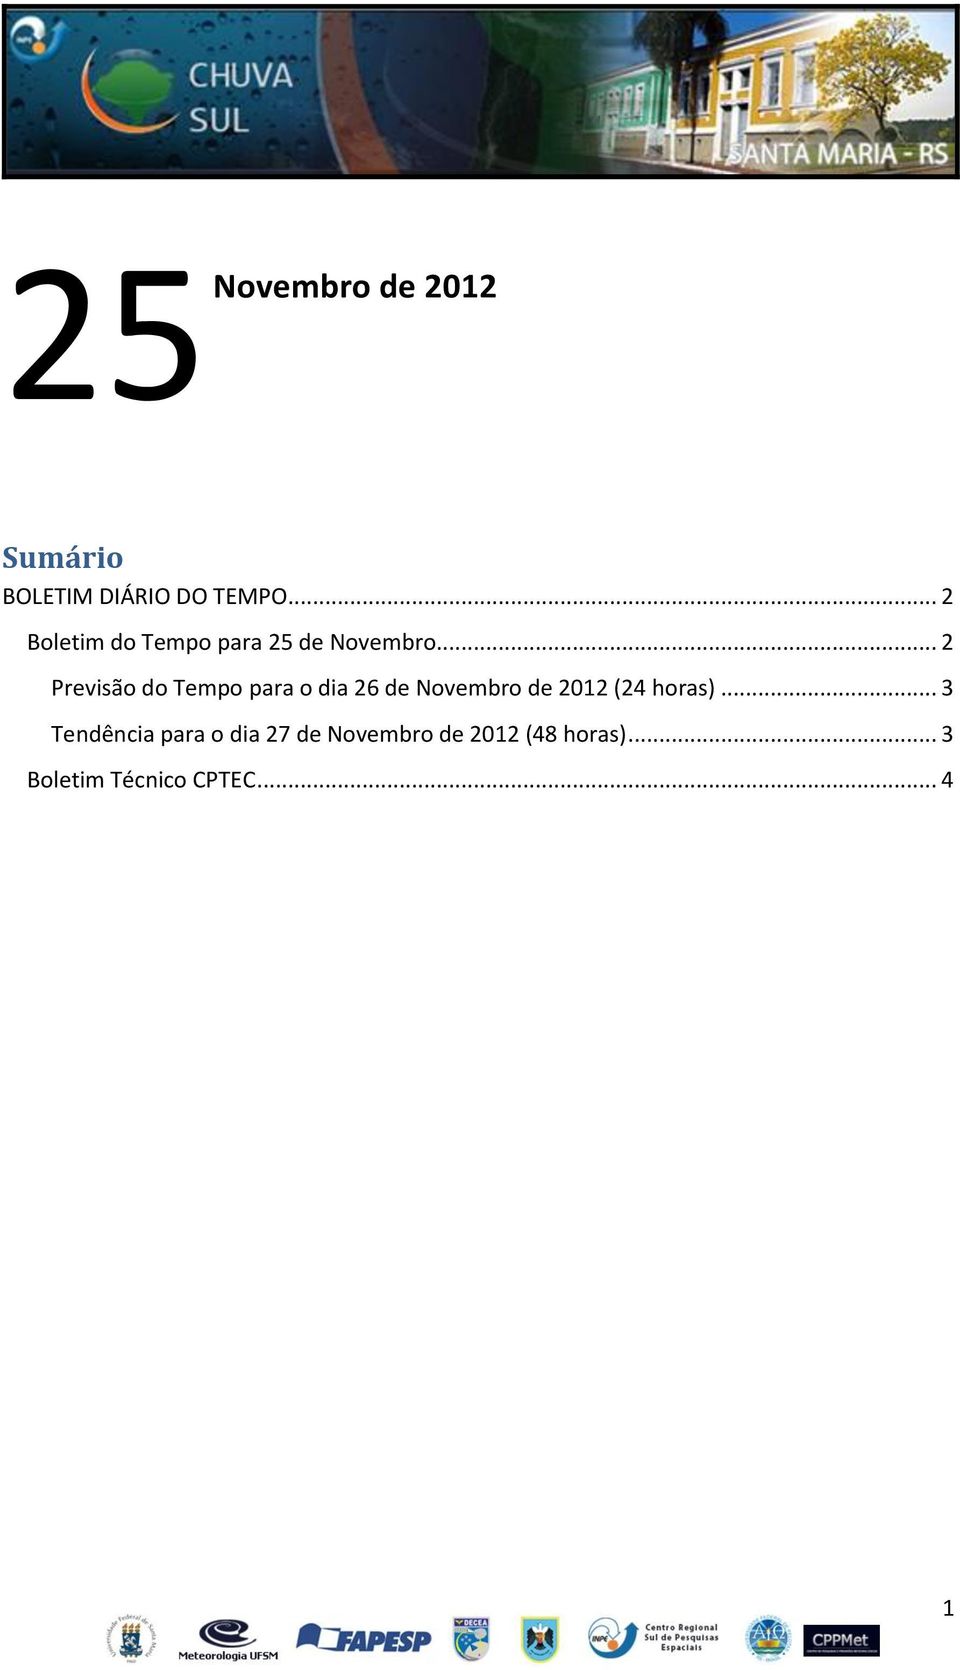 .. 2 Previsão do Tempo para o dia 26 de Novembro de 2012 (24